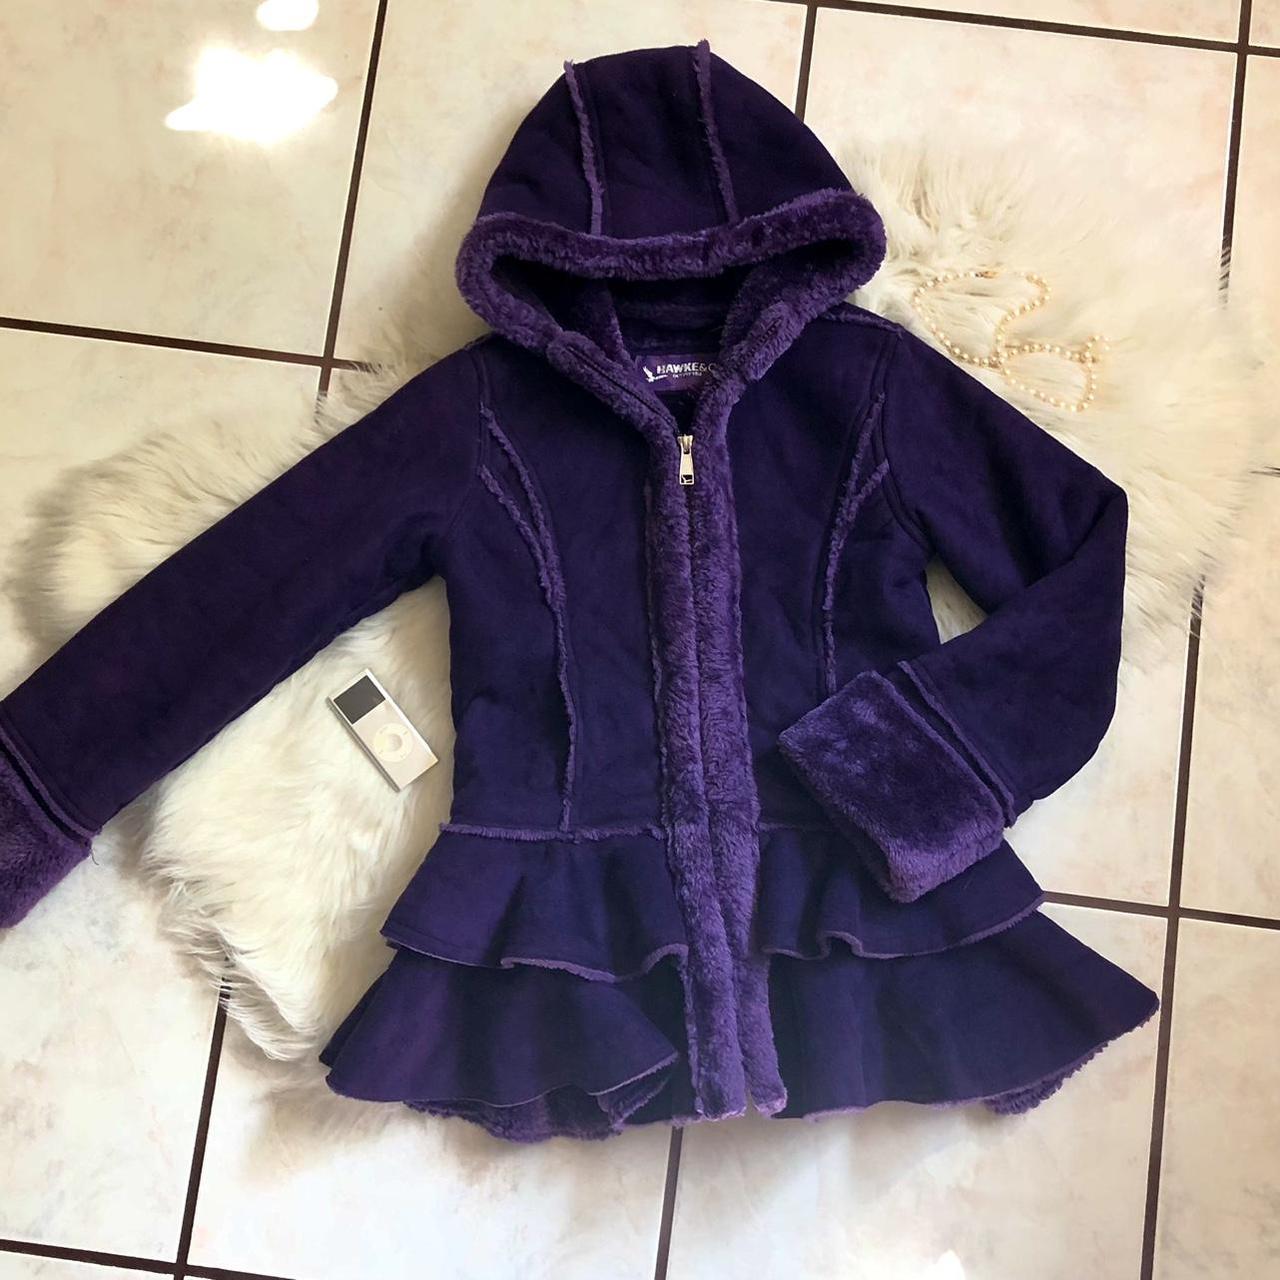 Hawke & Co. Women's Purple Coat